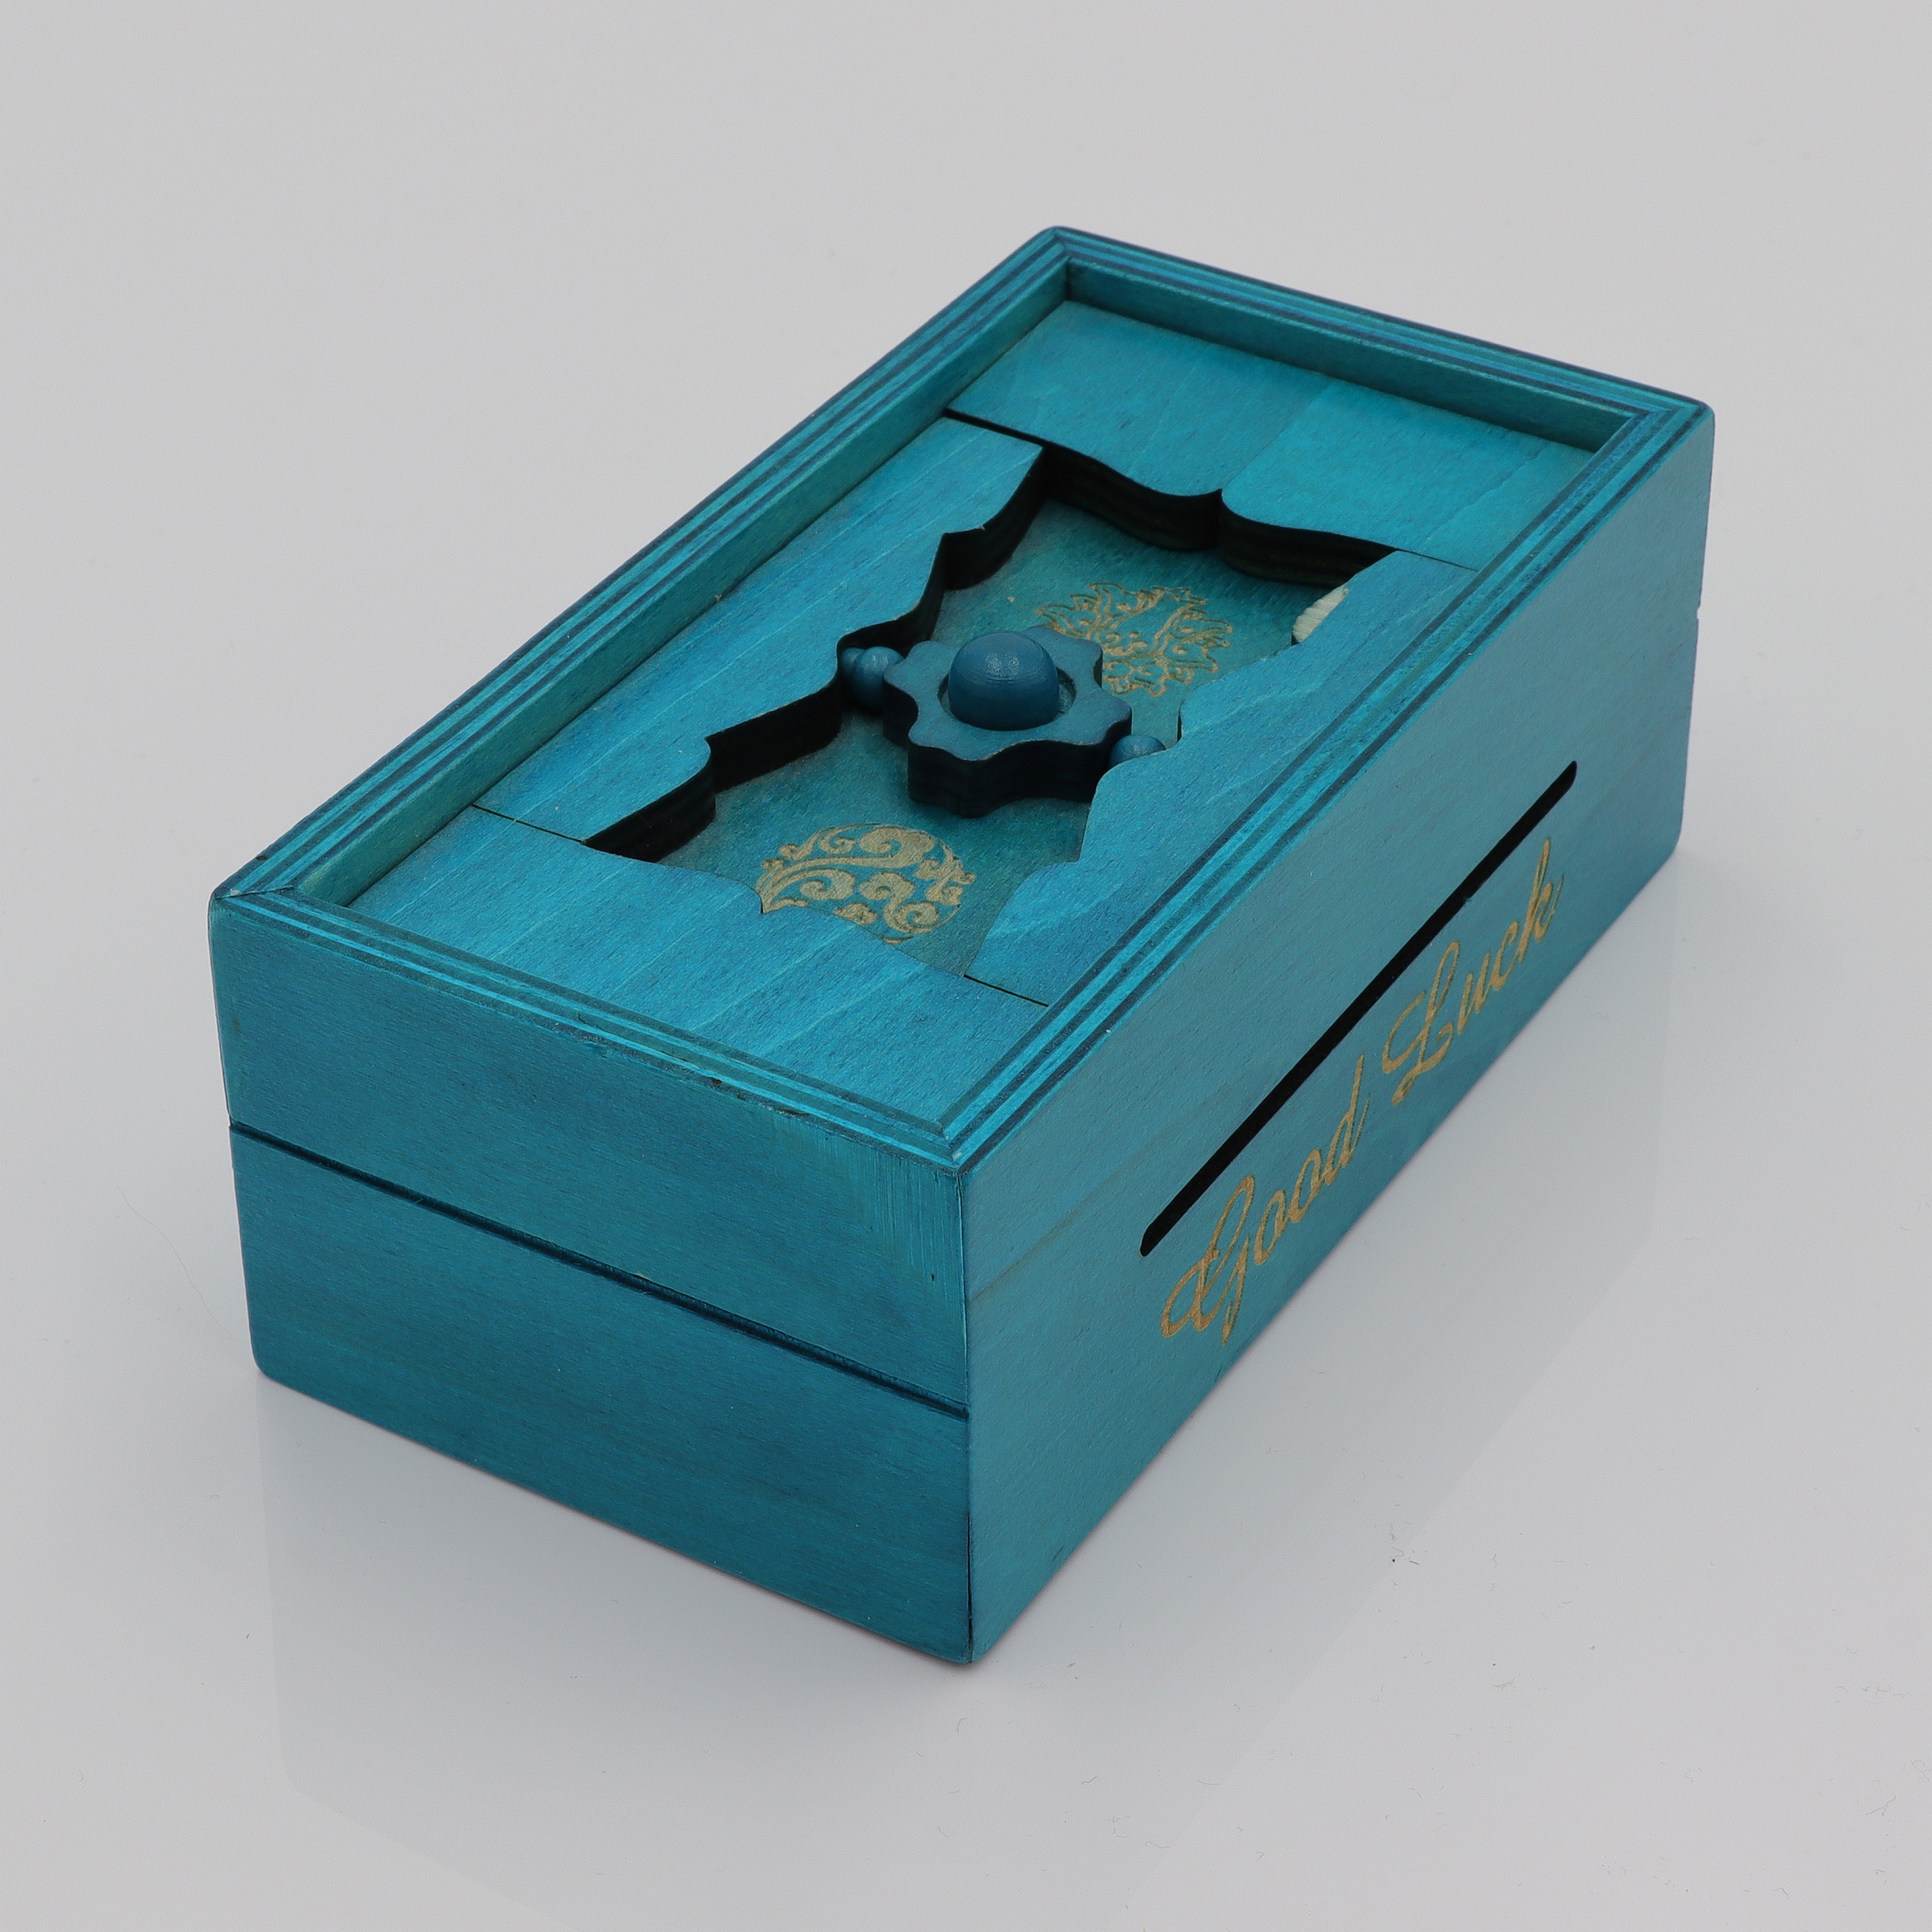 Good Luck - Trick-Kiste und Spardose aus Holz - Puzzle Box - Secret Opening Problem